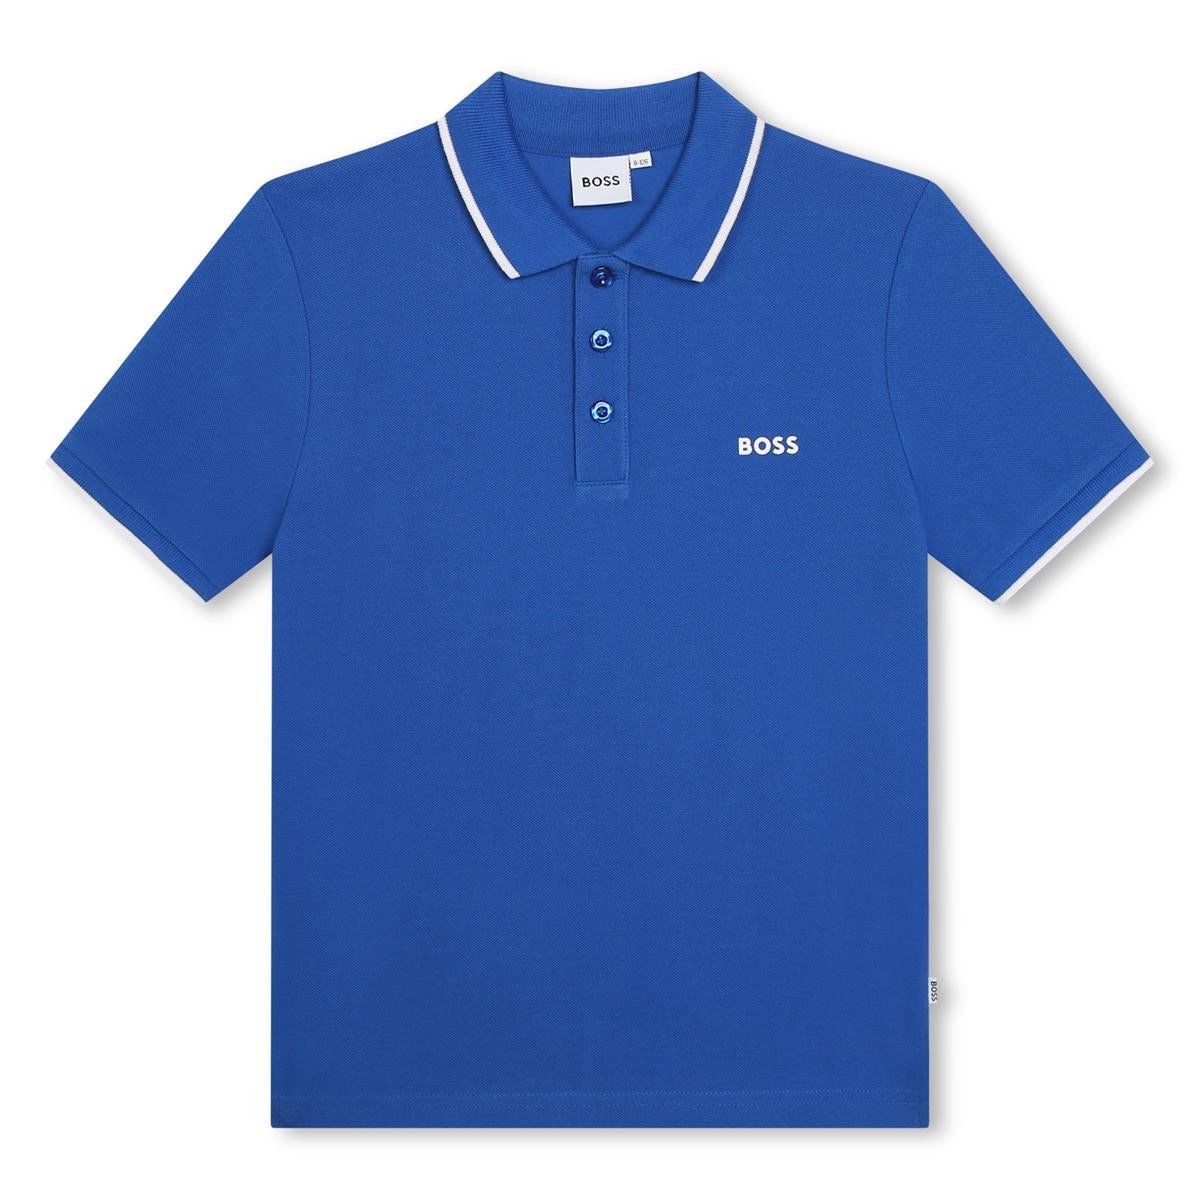 Boys Blue Cotton Polo Shirt